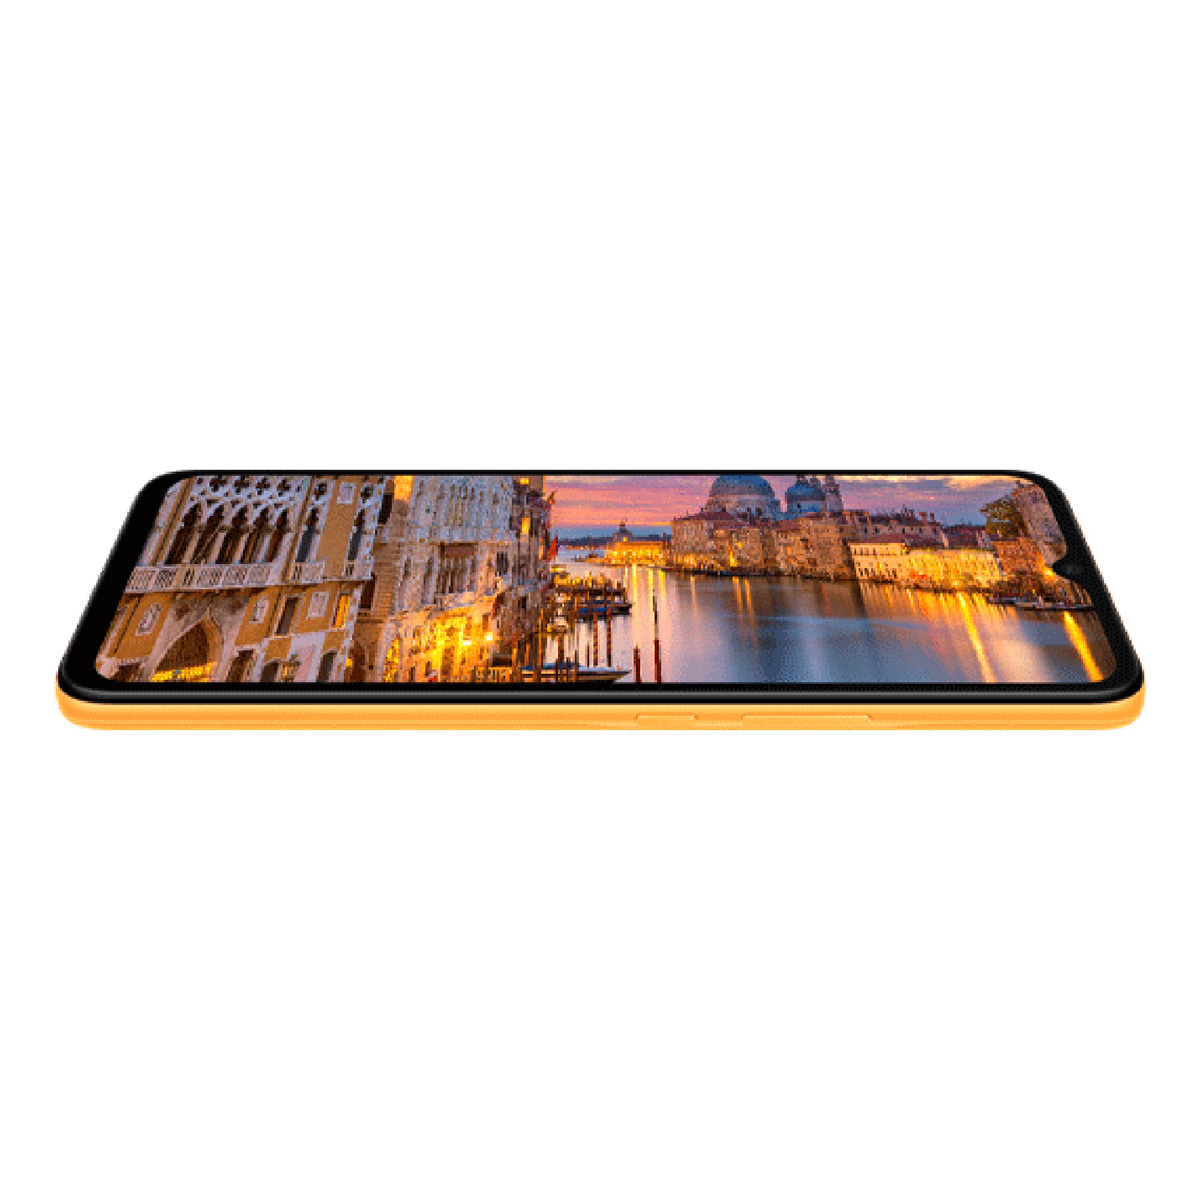 هونور X5 هاتف ذكي بشريحتين اتصال 4G ، رام 2 جيجا ، ذاكرة تخزين 32 جيجا بايت ، برتقالي شروق الشمس ، VNA-LX2